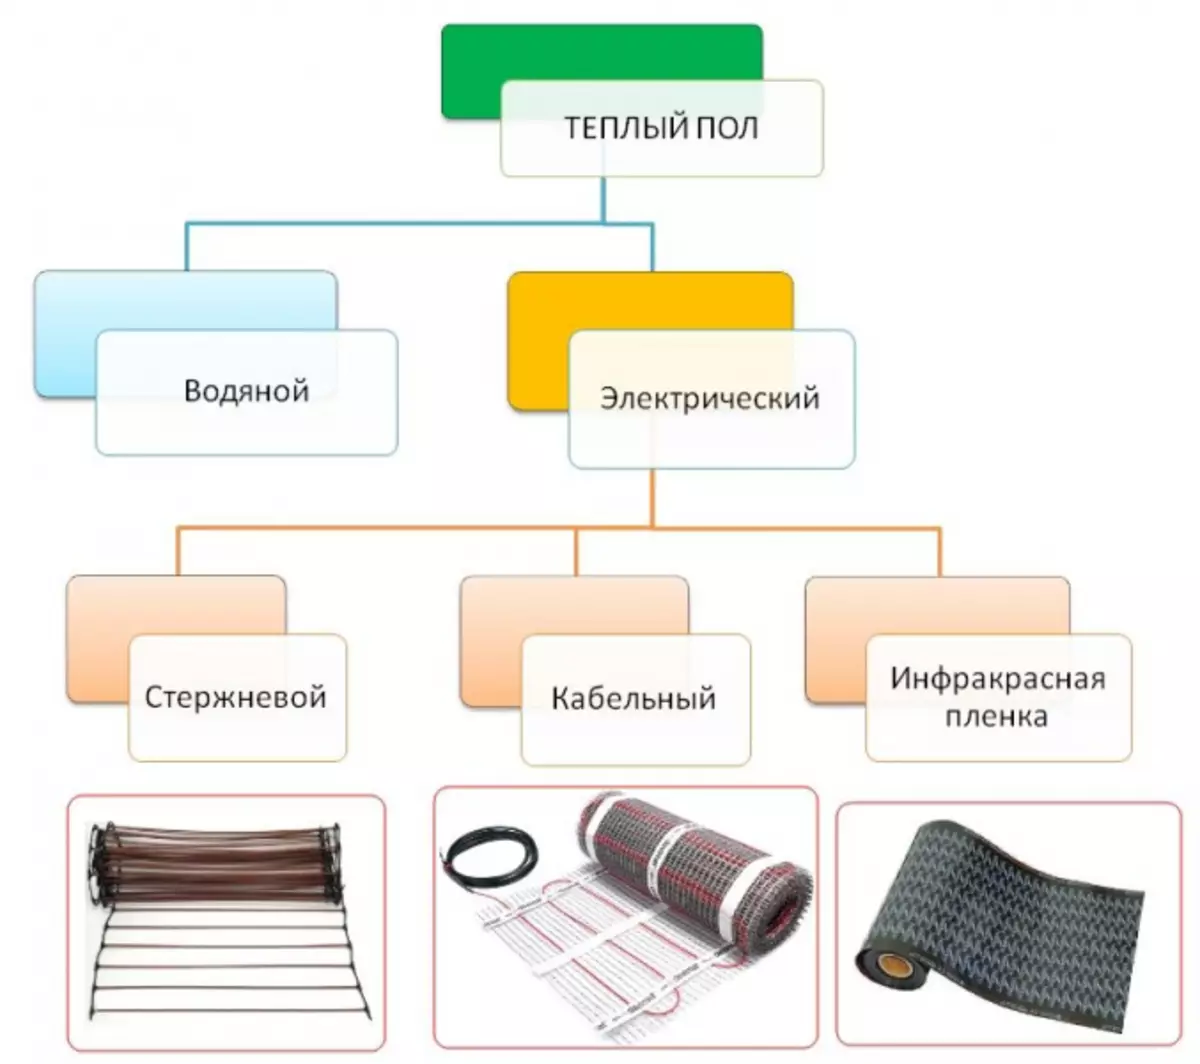 Sistem pemanasan gabungan: radiator dan lantai hangat, skema